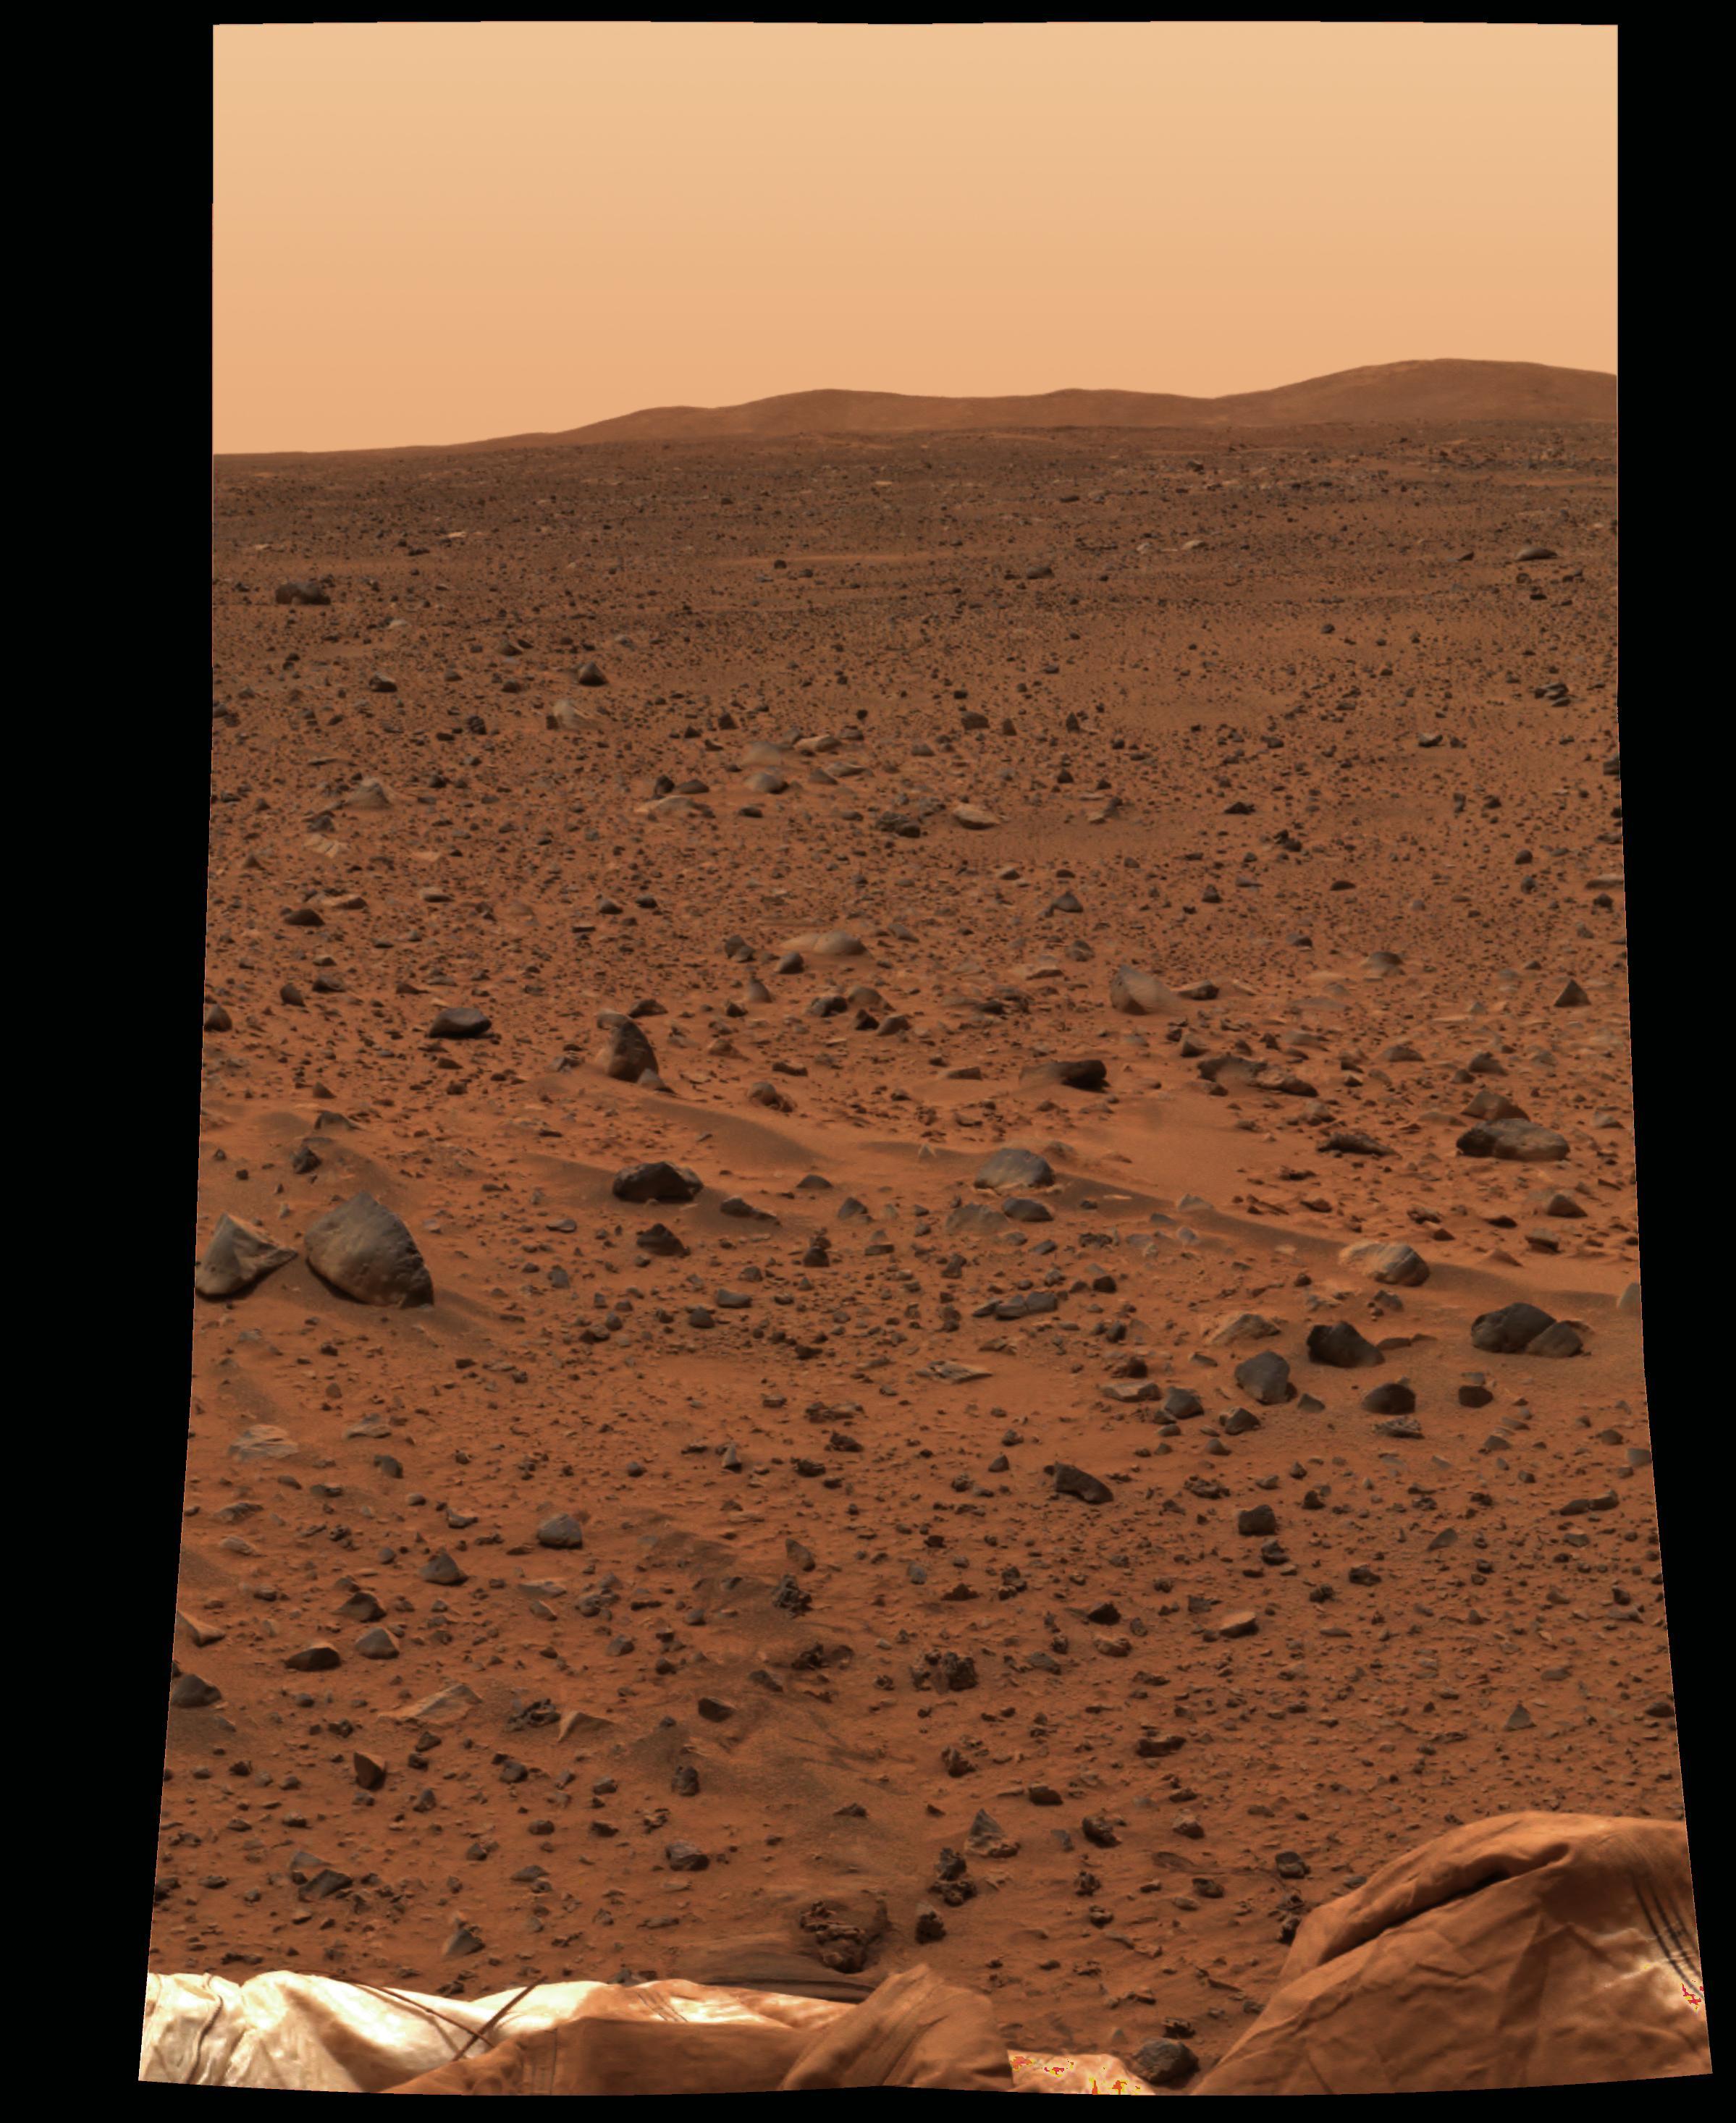 Une photo prise sur la planète Mars. [Nasa - Curiosity]